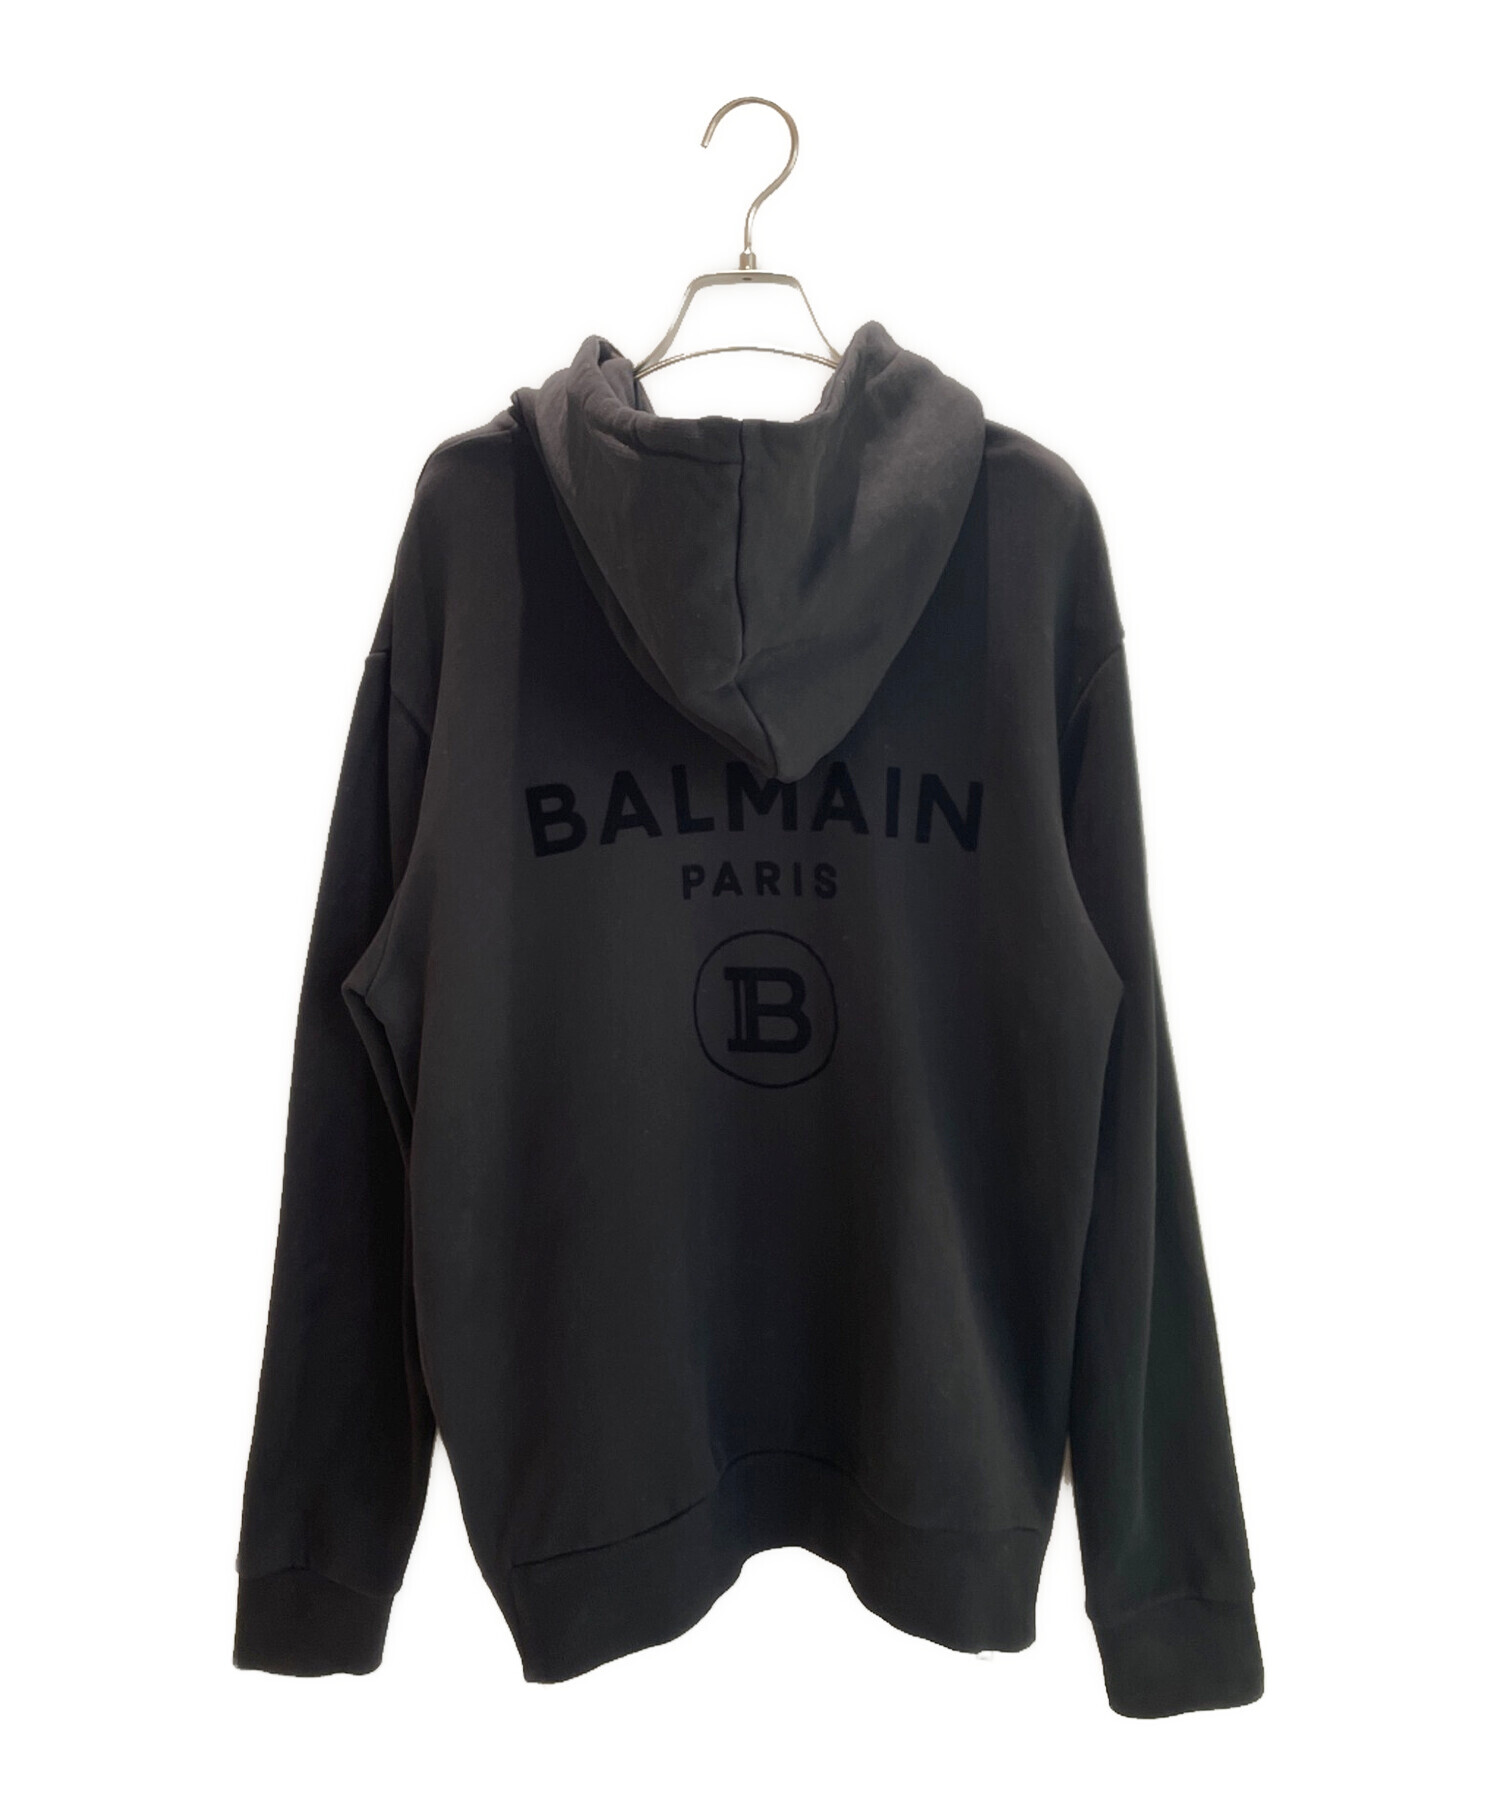 BALMAIN (バルマン) バックロゴジップアップフーディー ブラック サイズ:L